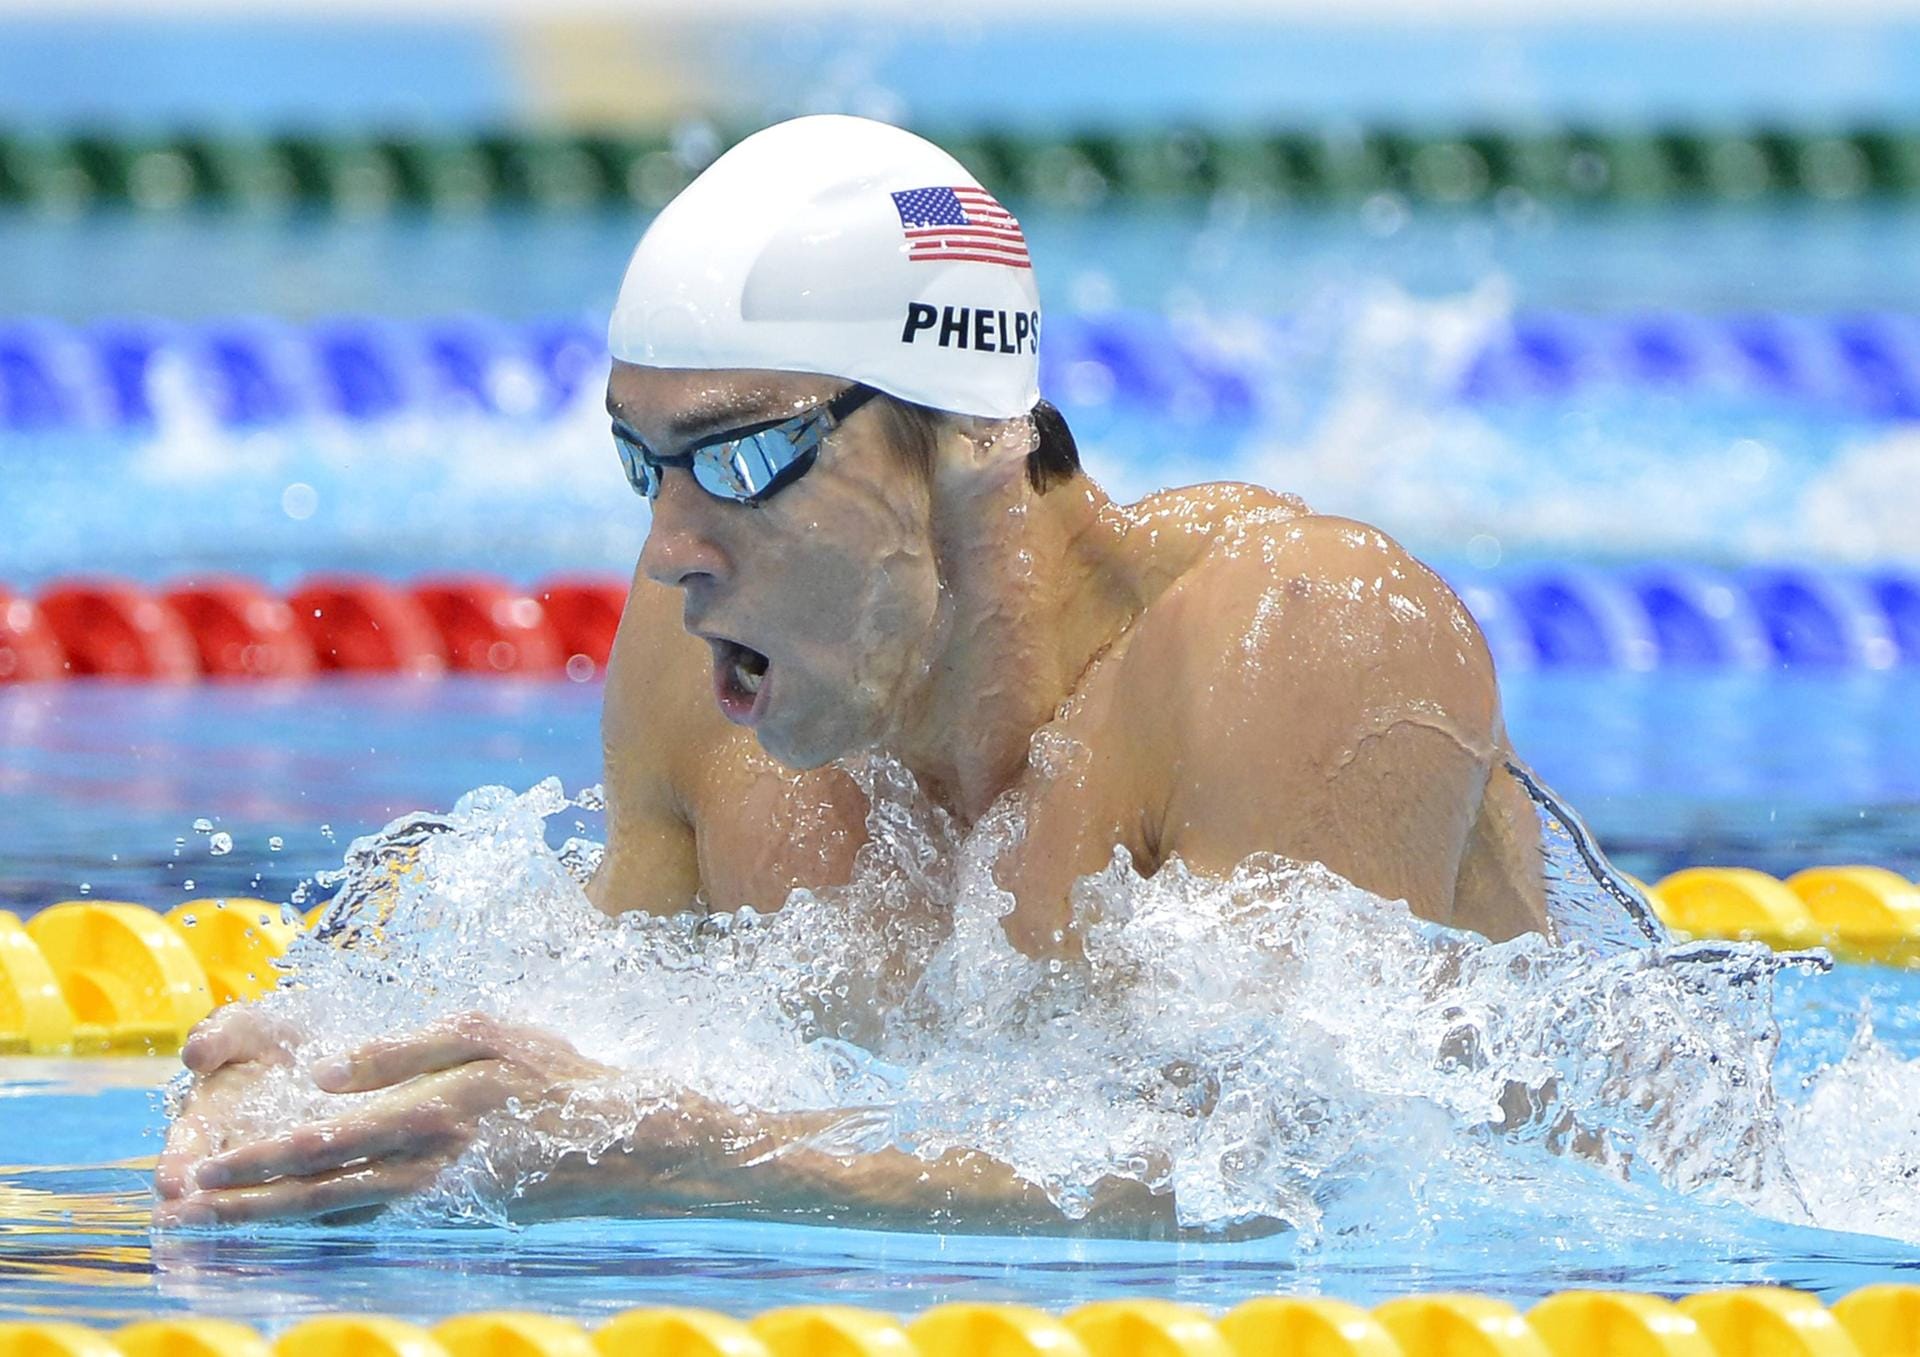 Der erfolgreichste Athlet in der Geschichte der Olympischen Spiele heißt Michael Phelps. Mit 23 Goldmedaillen steht er auf Platz eins der Liste und gilt aufgrund seines Körperbaus (riesige Spannweite, mächtiger Oberkörper, schmale Hüften) als der perfekte Schwimmer. Der US-Amerikaner triumphierte bei den Spielen in Peking 2008 achtmal und schwamm dabei siebenmal Weltrekord. 2012 in London gewann Phelps noch viermal Gold.